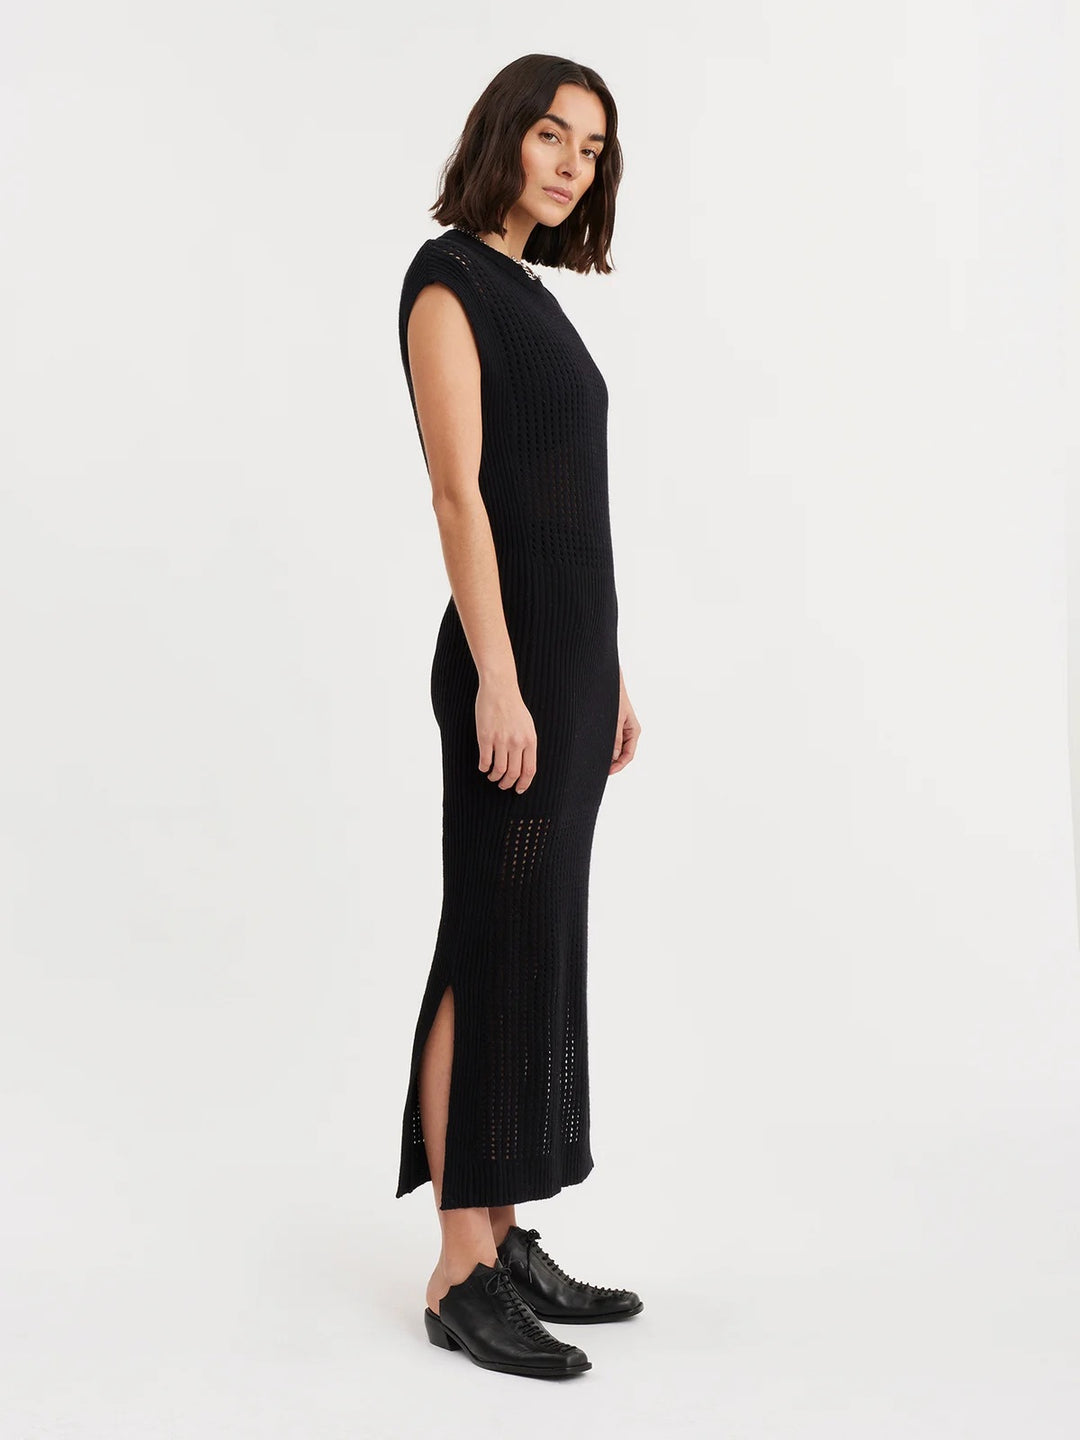 Solange Crochet Dress  Black